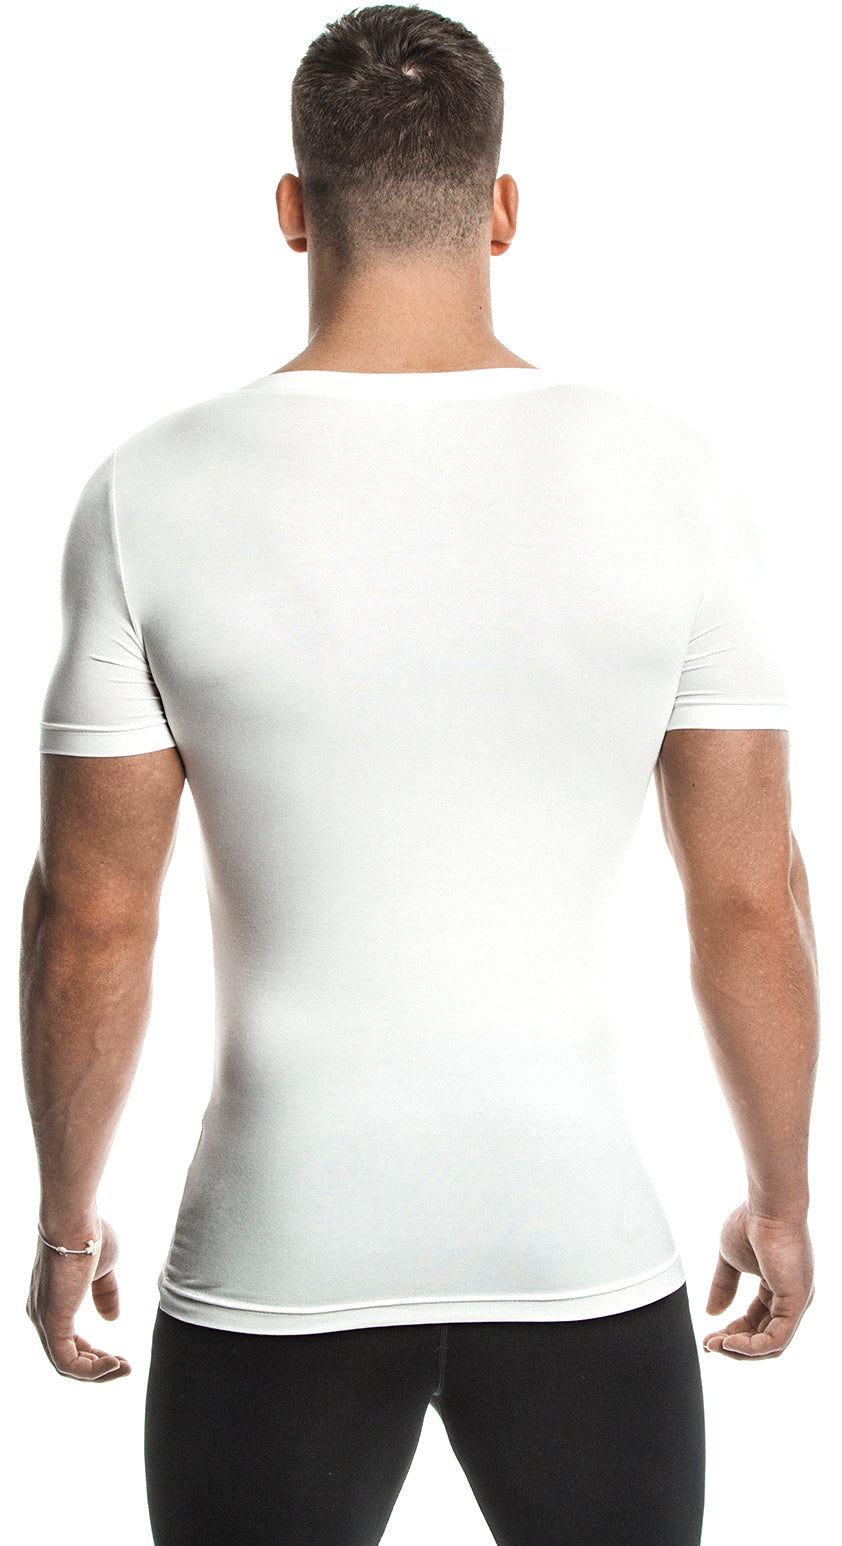 Short Sleeve T-Shirt (White) - Bamboo/Elastin Fiber - DEMIG